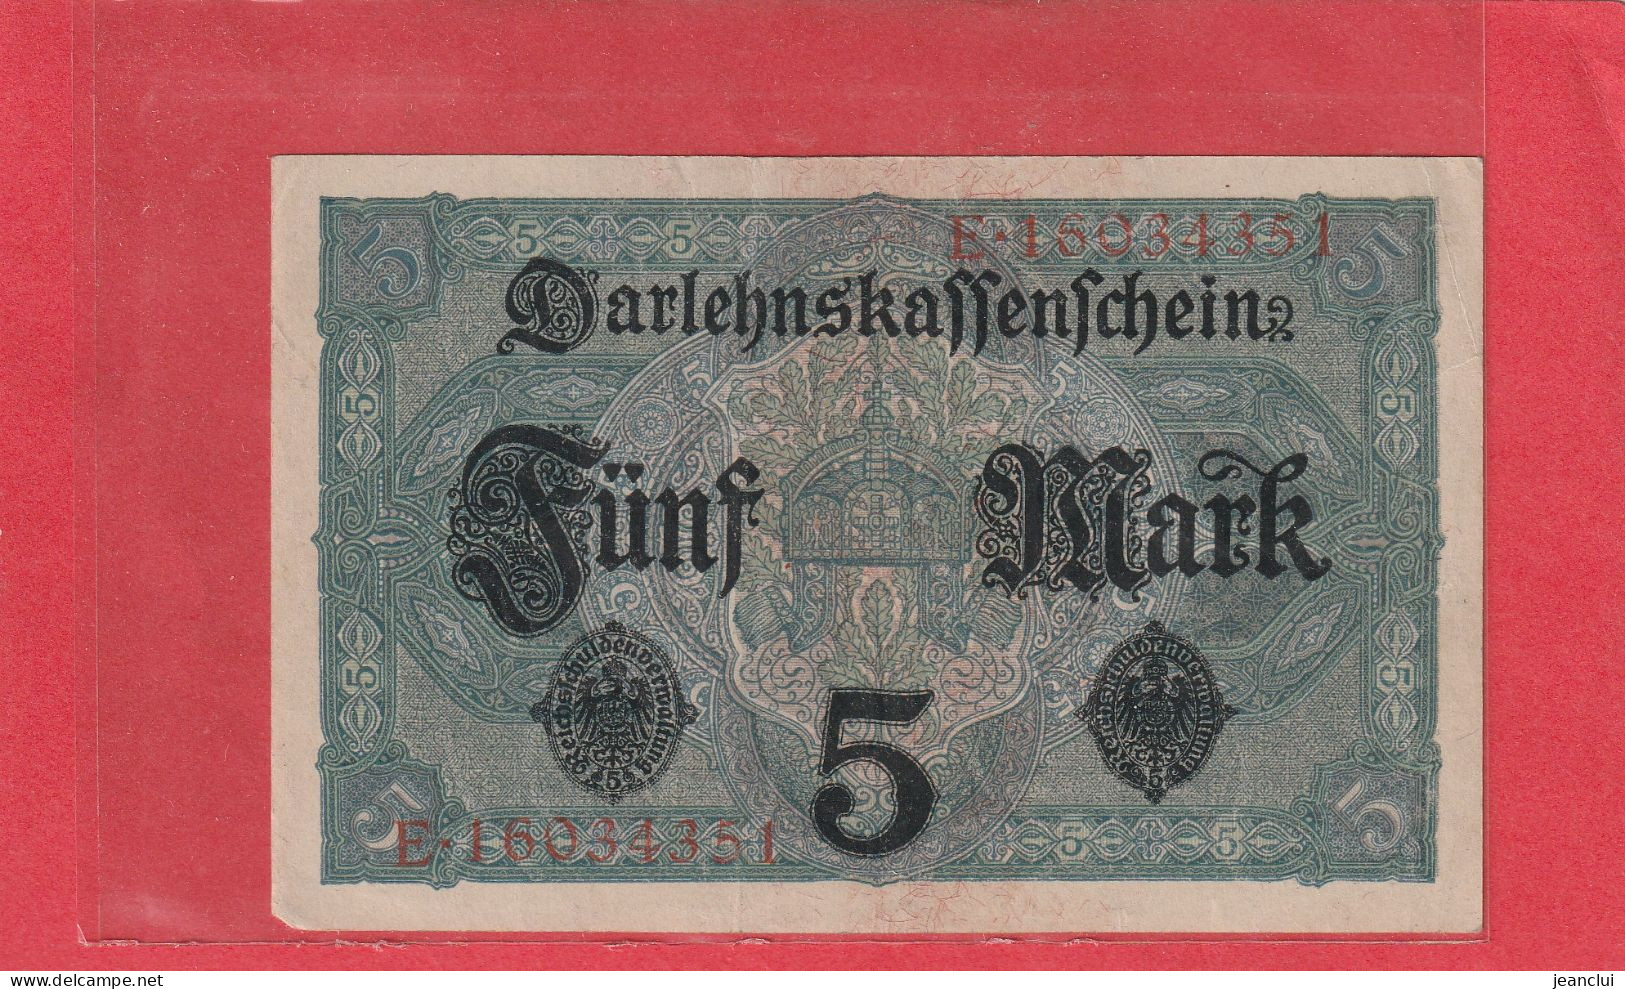 DARLEHENSKASSENSCHEINE  -  5 MARK  .  1-8-1917  . N°  E.16034351  . 2 SCANES - Reichsschuldenverwaltung